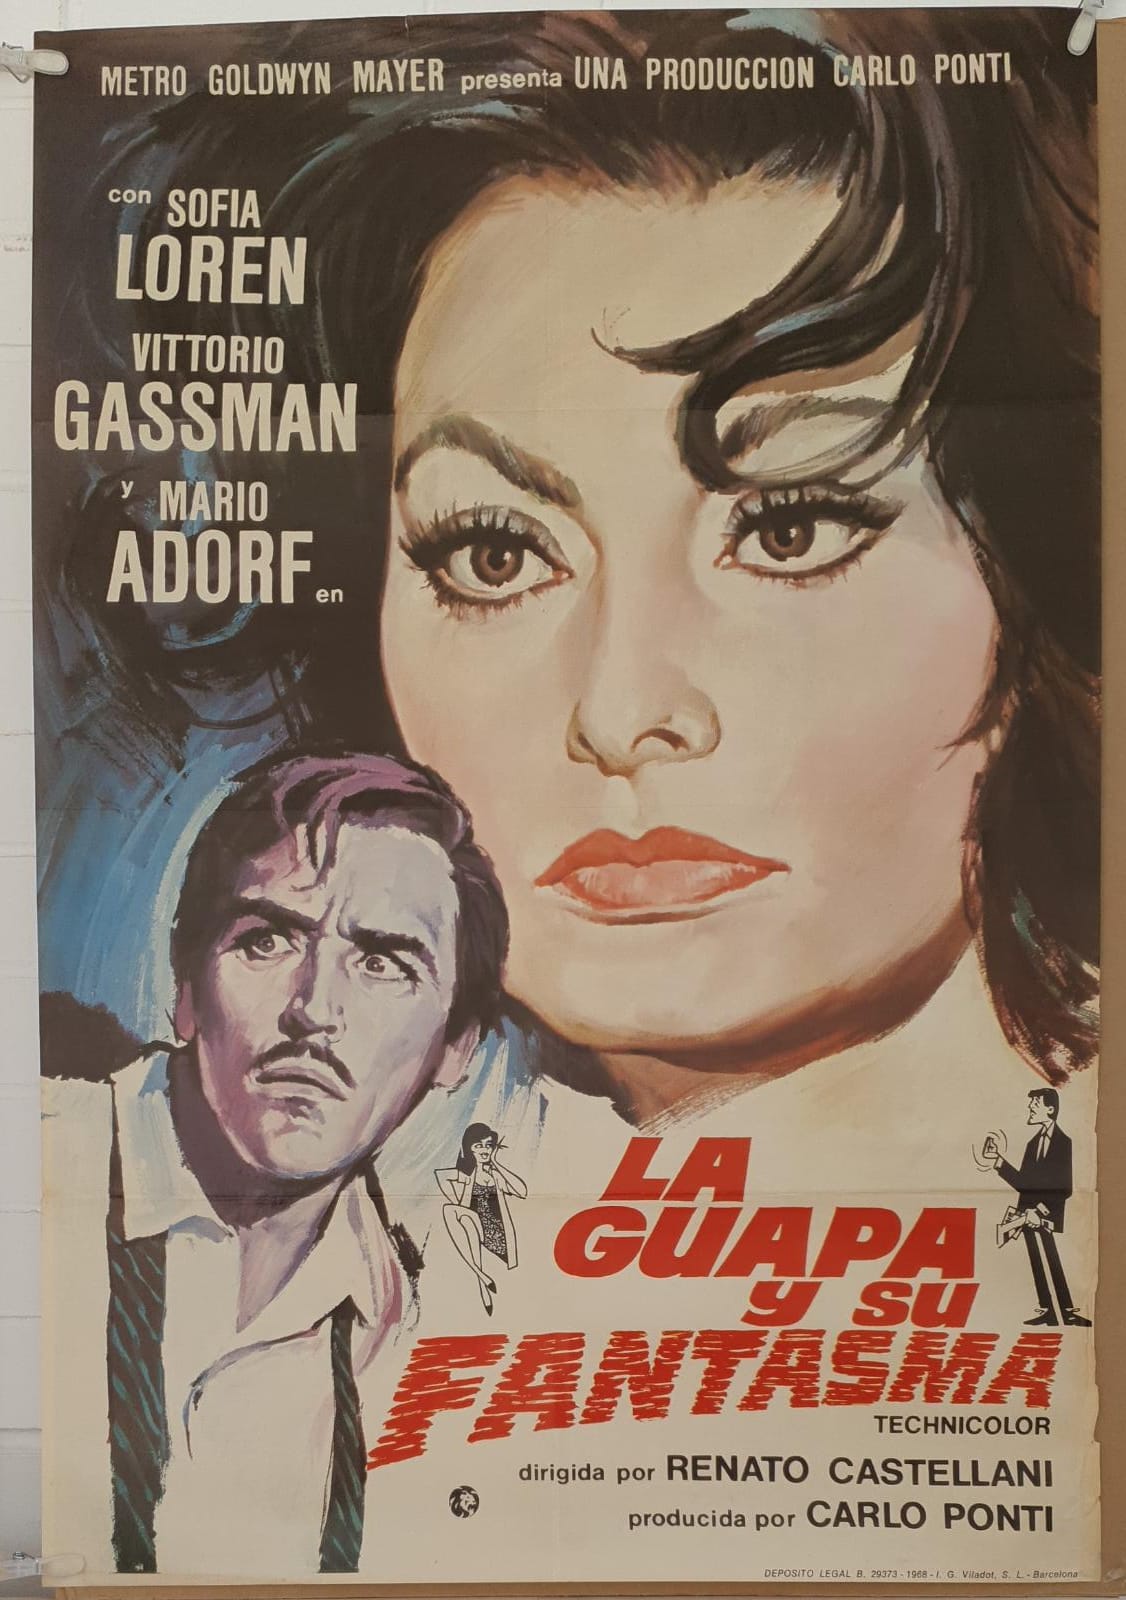 La Guapa y su fantasma. Cartel (100x70) de Estreno, 1968